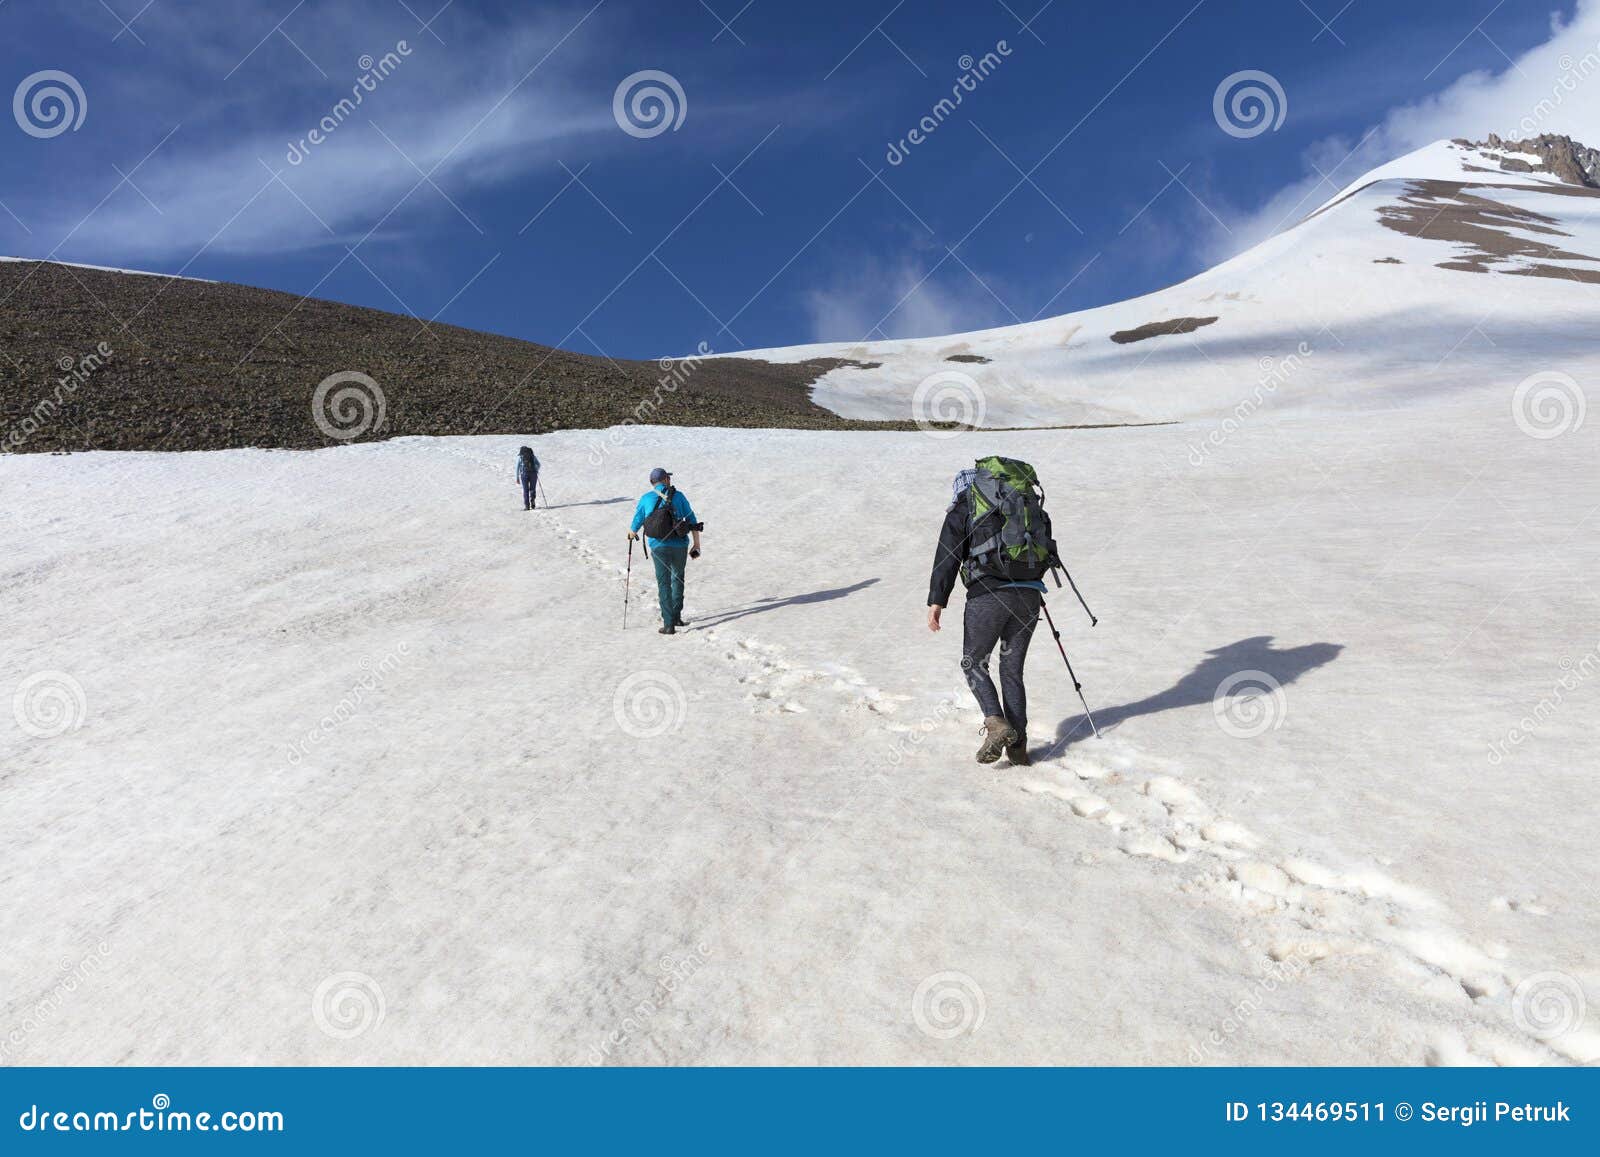 Οι τουρίστες ανέρχονται επάνω mountainside στη χιονοσκεπή σύνοδο κορυφής. Μια ομάδα τουριστών με τα σακίδια πλάτης πηγαίνει σε ένα χιονώδες βουνό